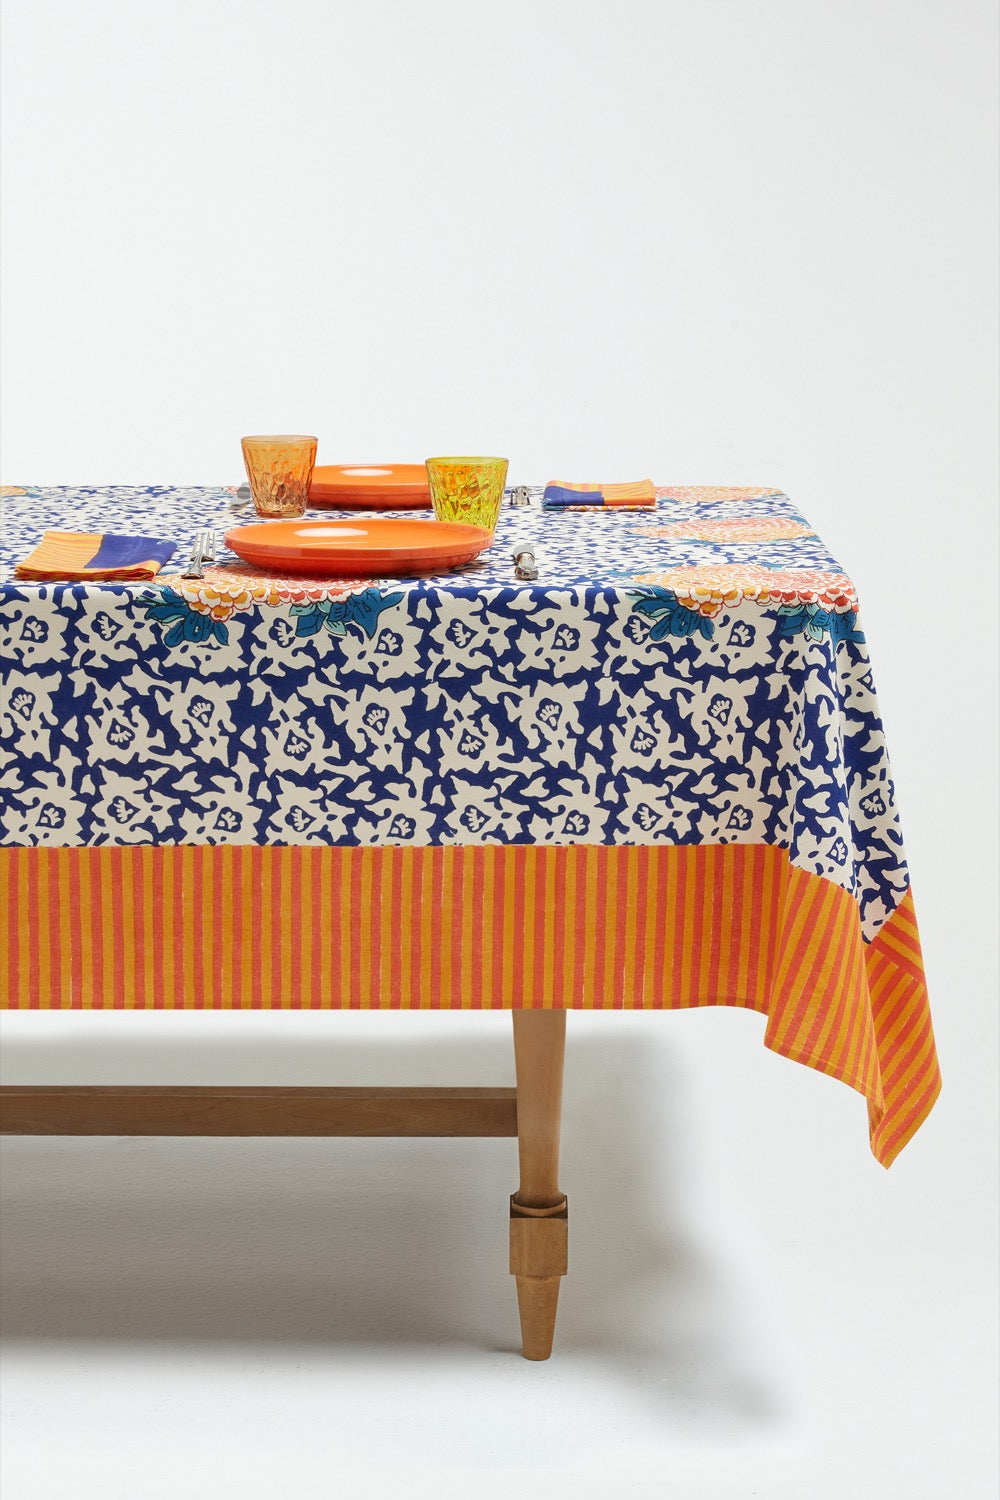 TABLETOP Arabesque Corolla Rectangular Tablecloth LISA CORTI